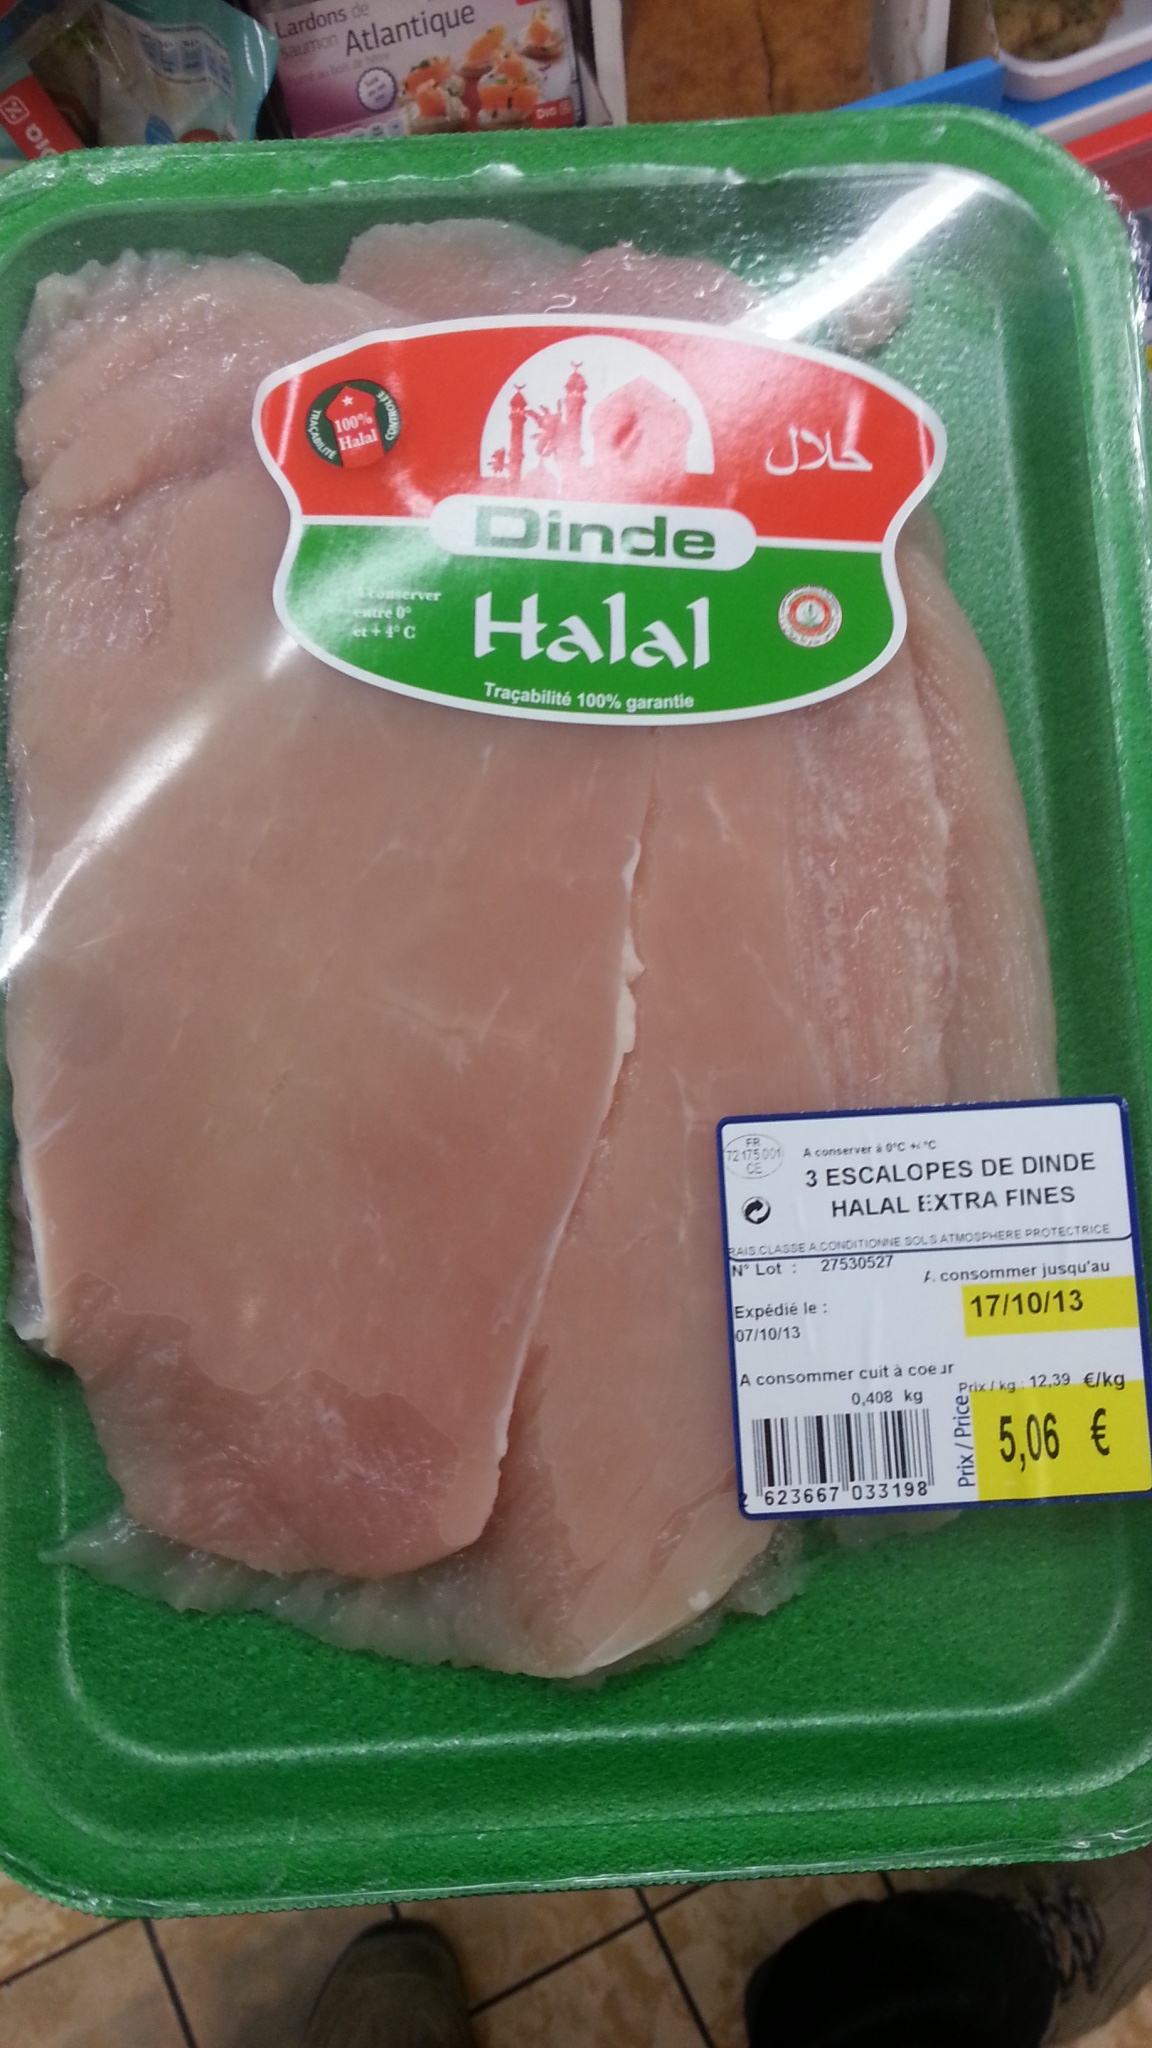 Escalopes de dinde Halal (x 3) extra fines - Producte - fr